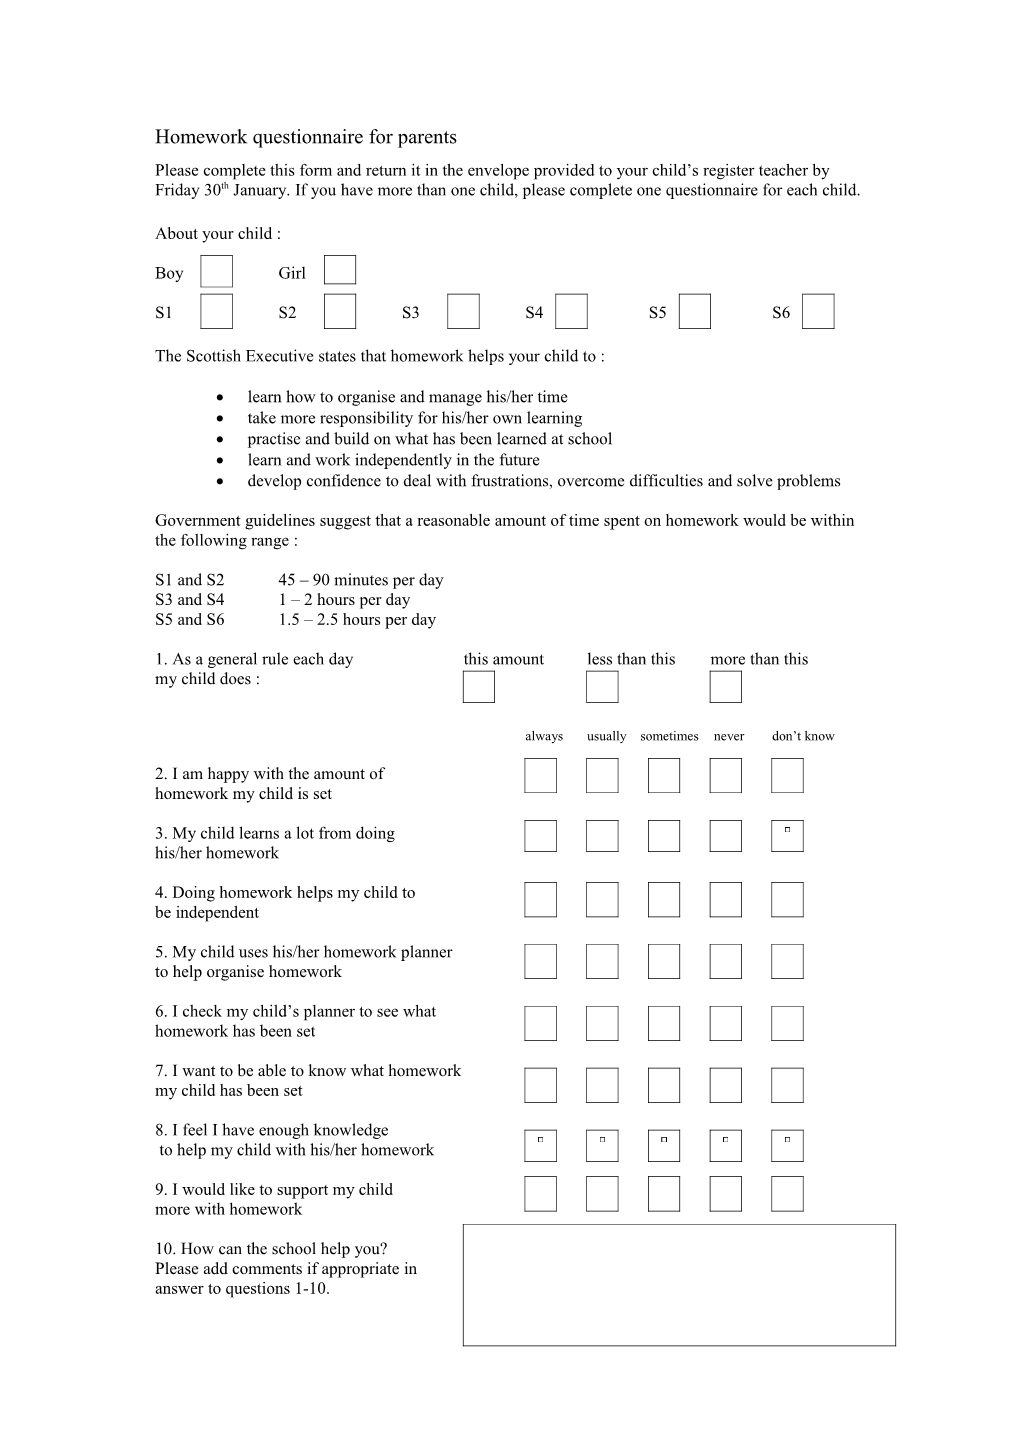 Homework Questionnaire for Parents